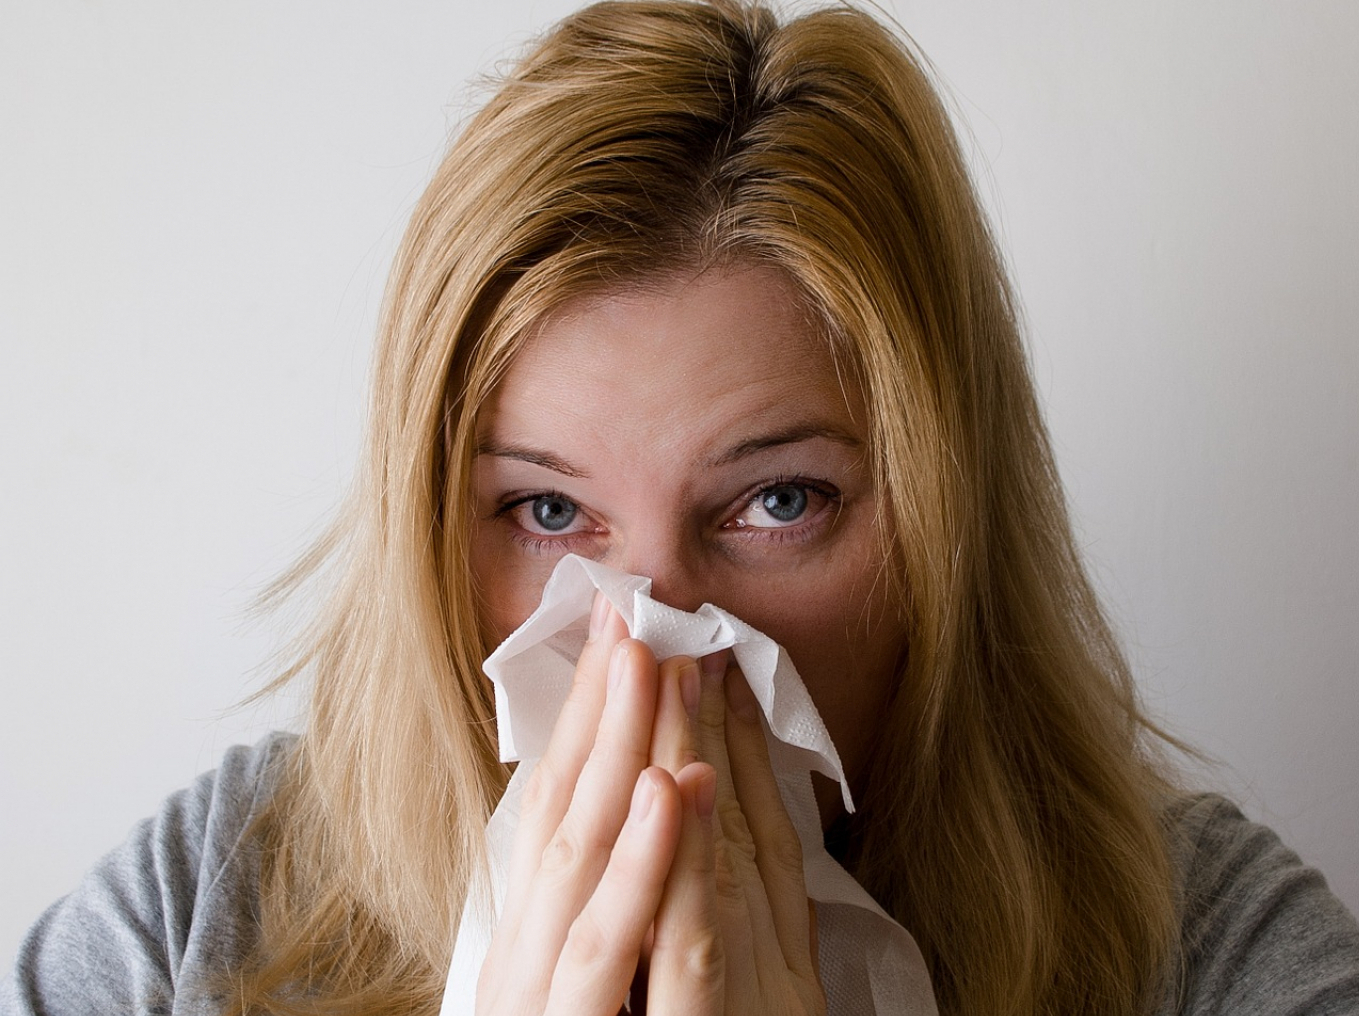 IMA LI RAZLOGA ZA PANIKU? Norovirus se brzo širi ali nije opasan